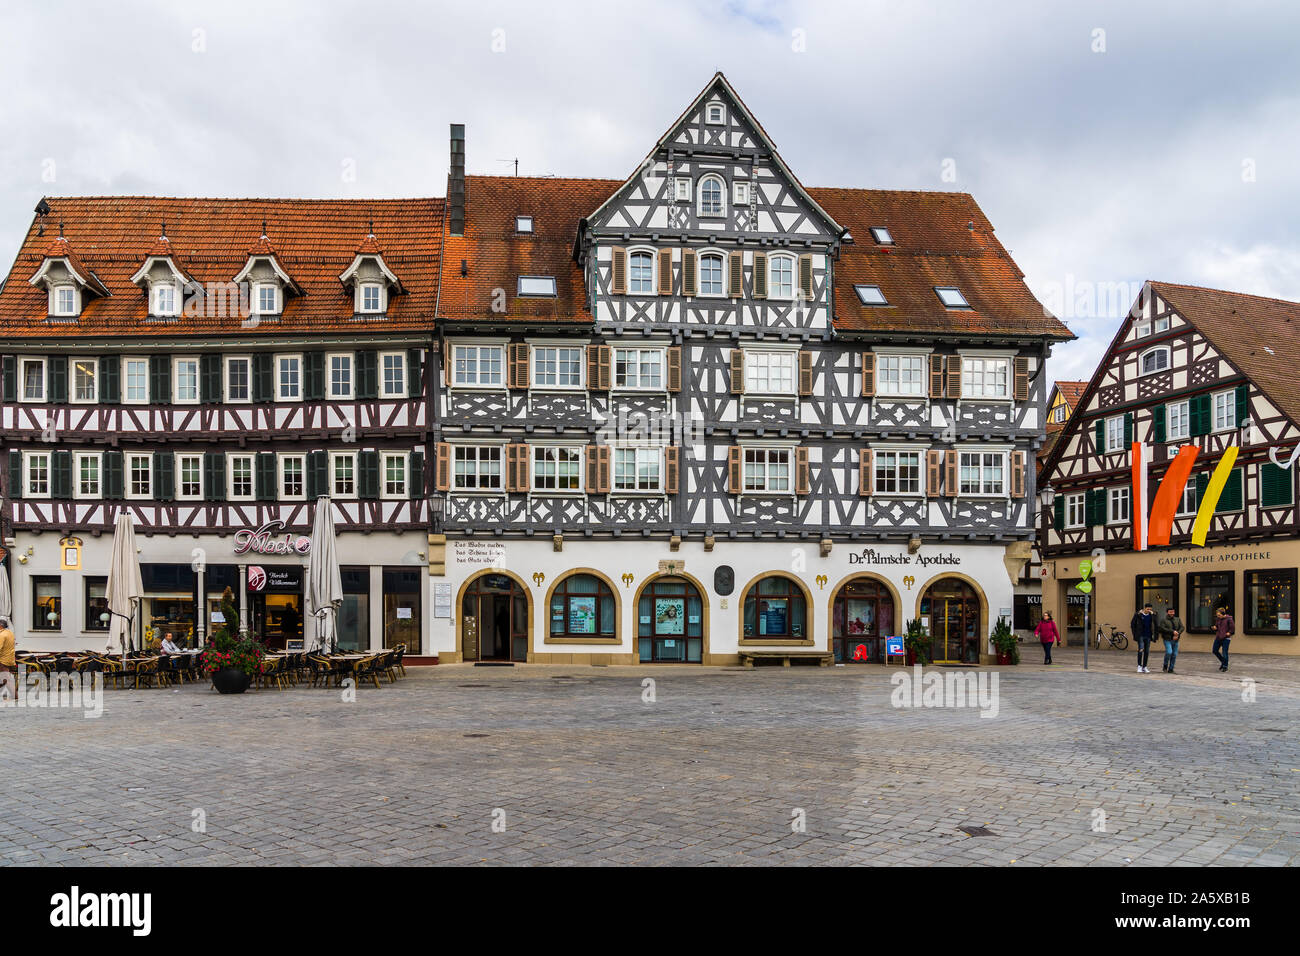 Schorndorf, Germania, 10 ottobre 2019, bellissime case con travi di legno al mercato antico nel centro città schorndorf, una piazza in ciottoli nel vecchio t Foto Stock